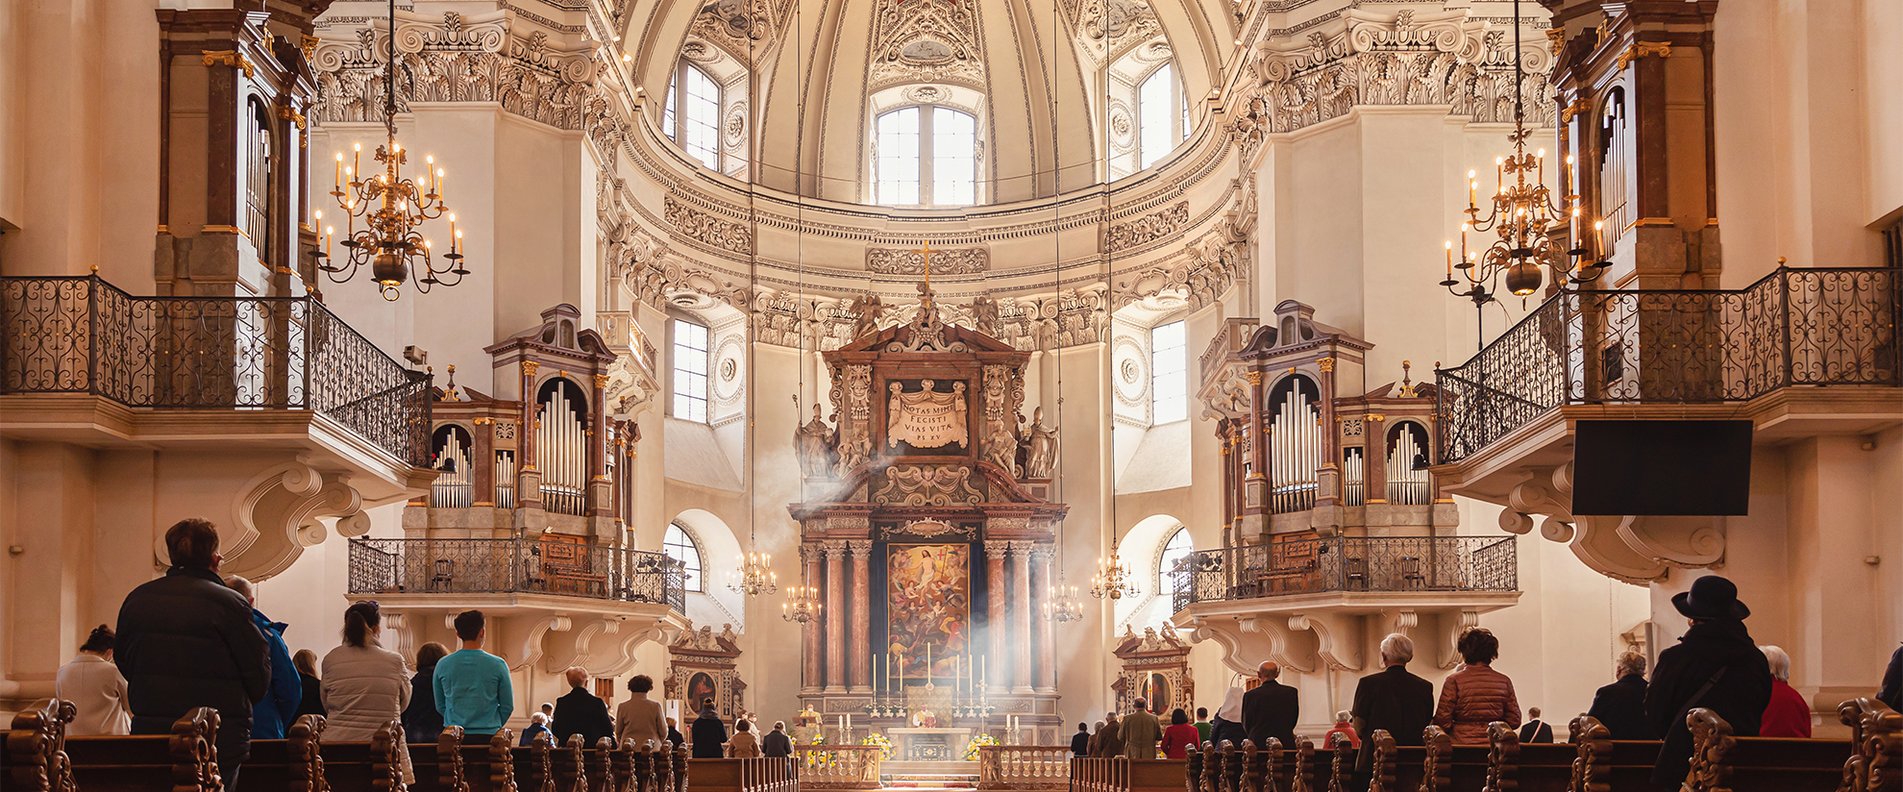 Festkonzert im Dom zu Salzburg | © Eva trifft Fotografie